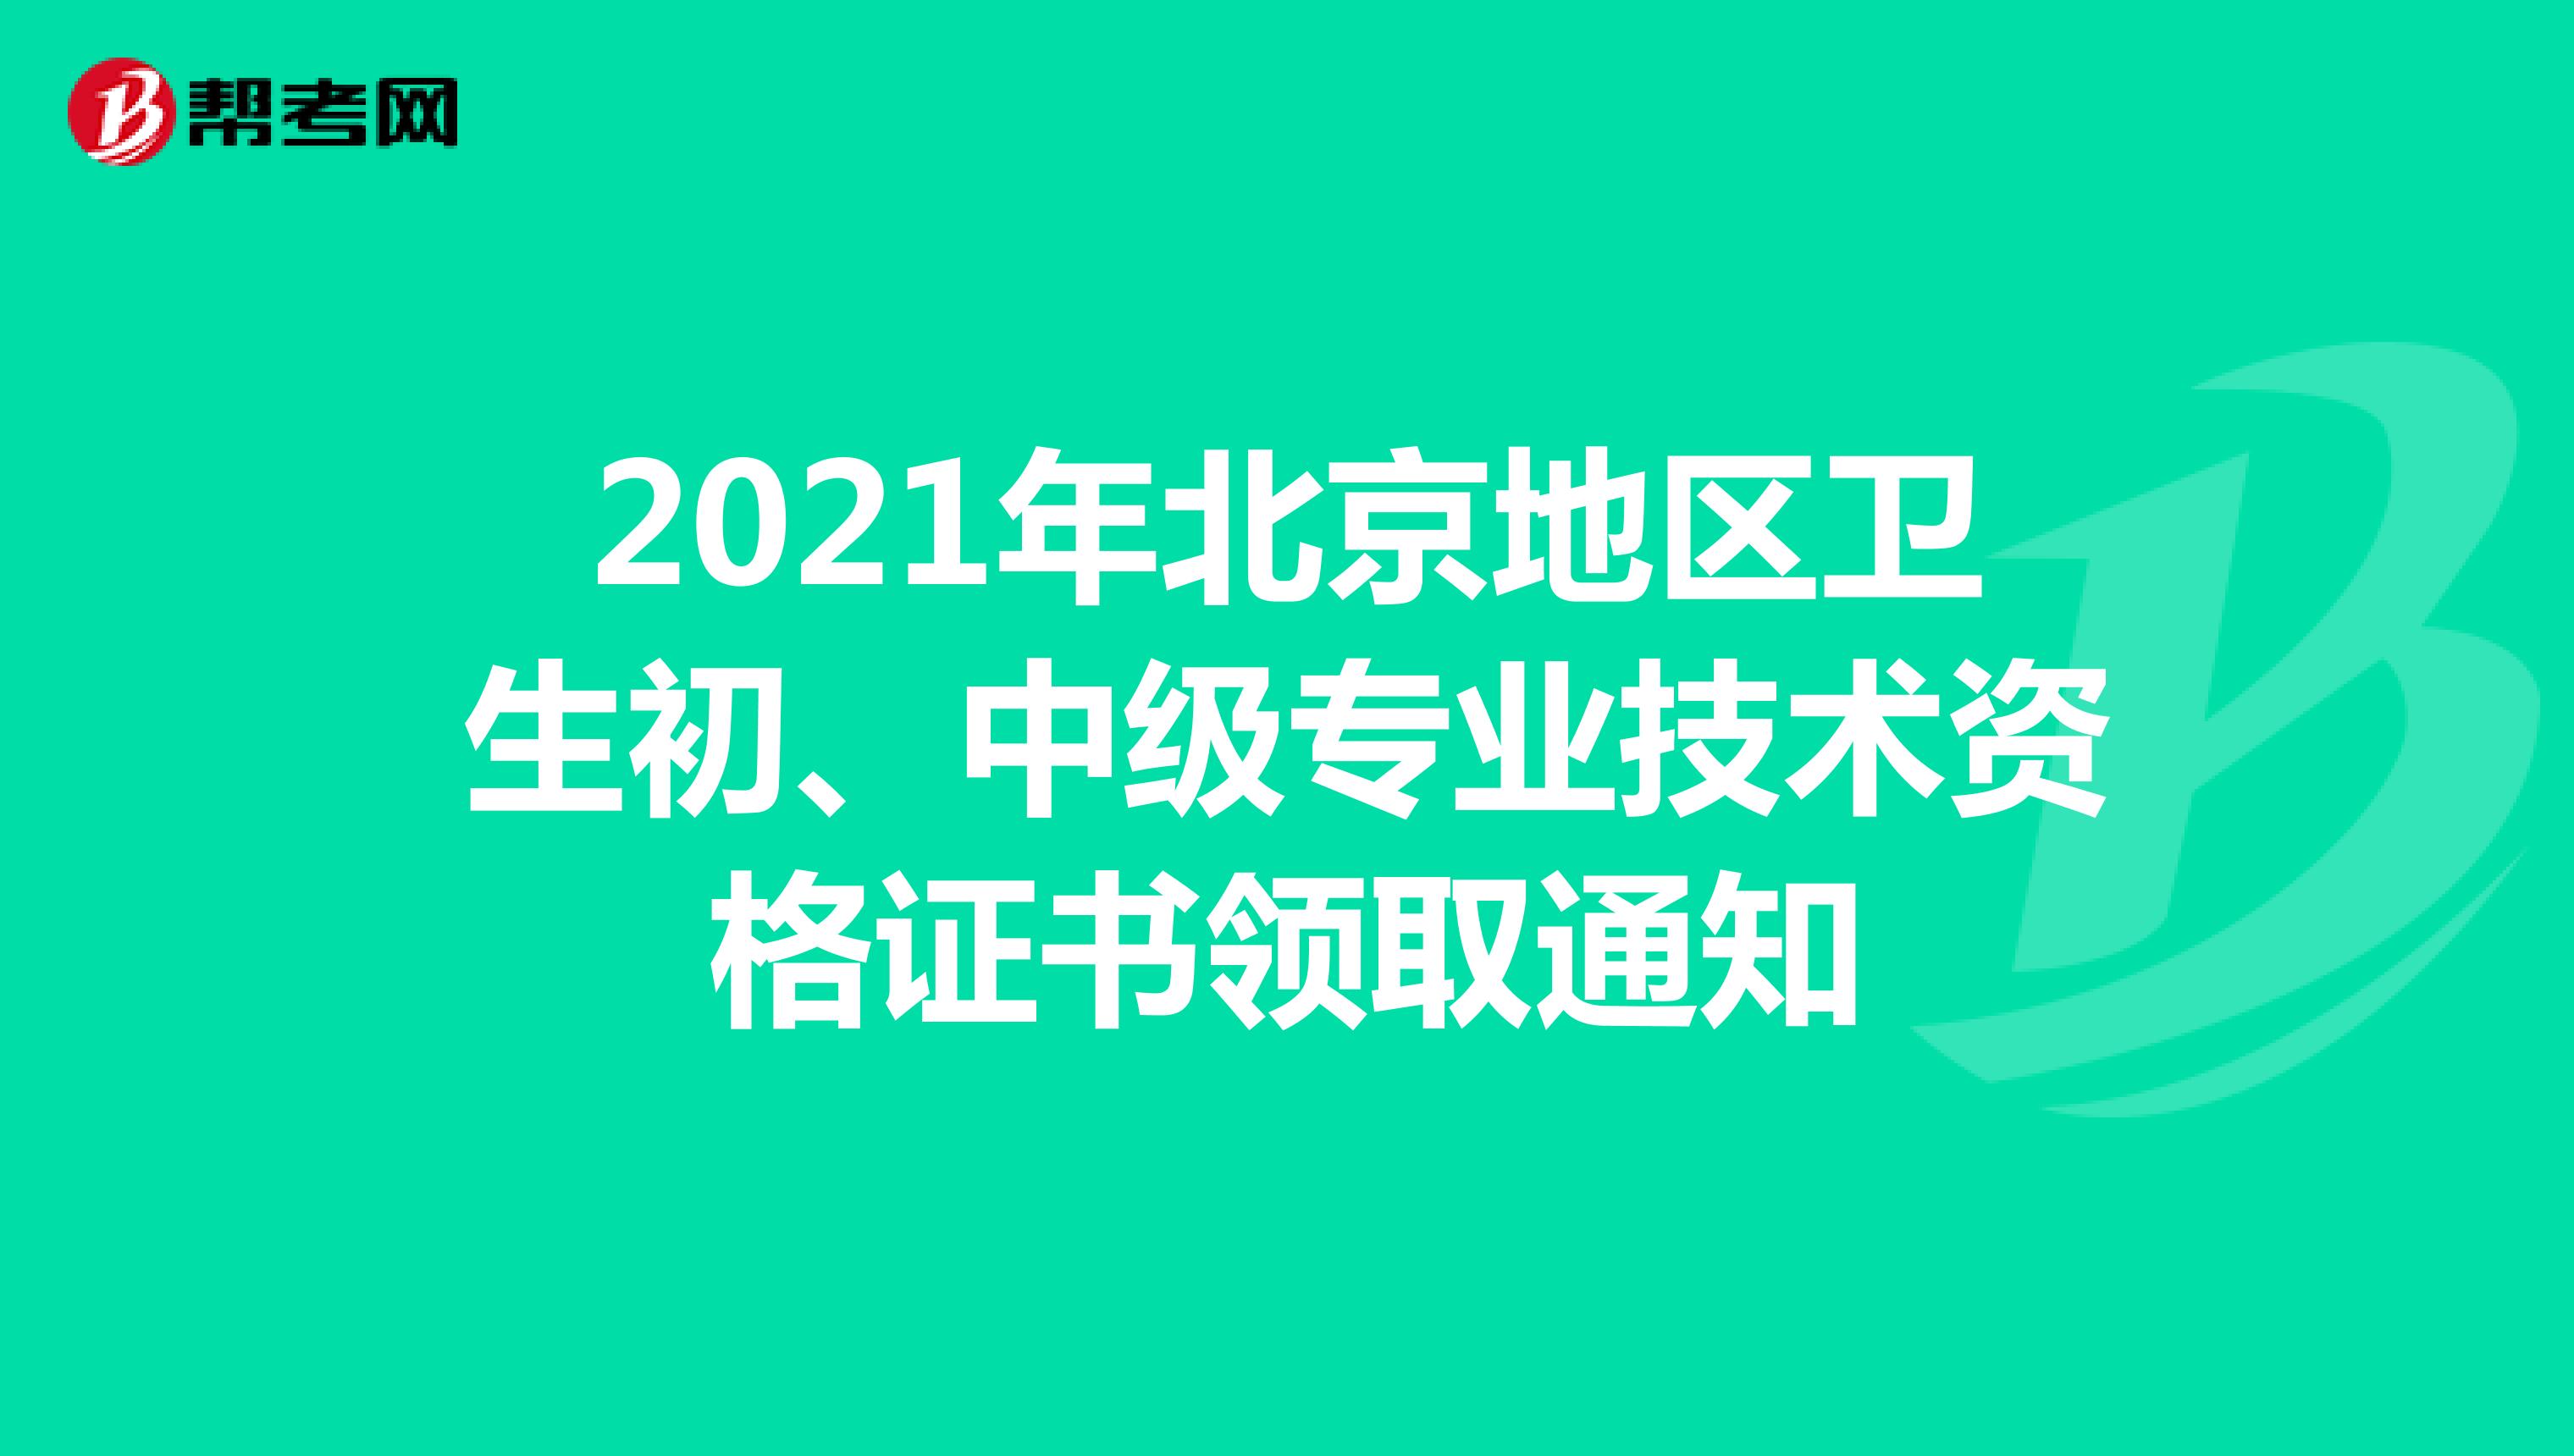 2021年北京地区卫生初、中级专业技术资格证书领取通知